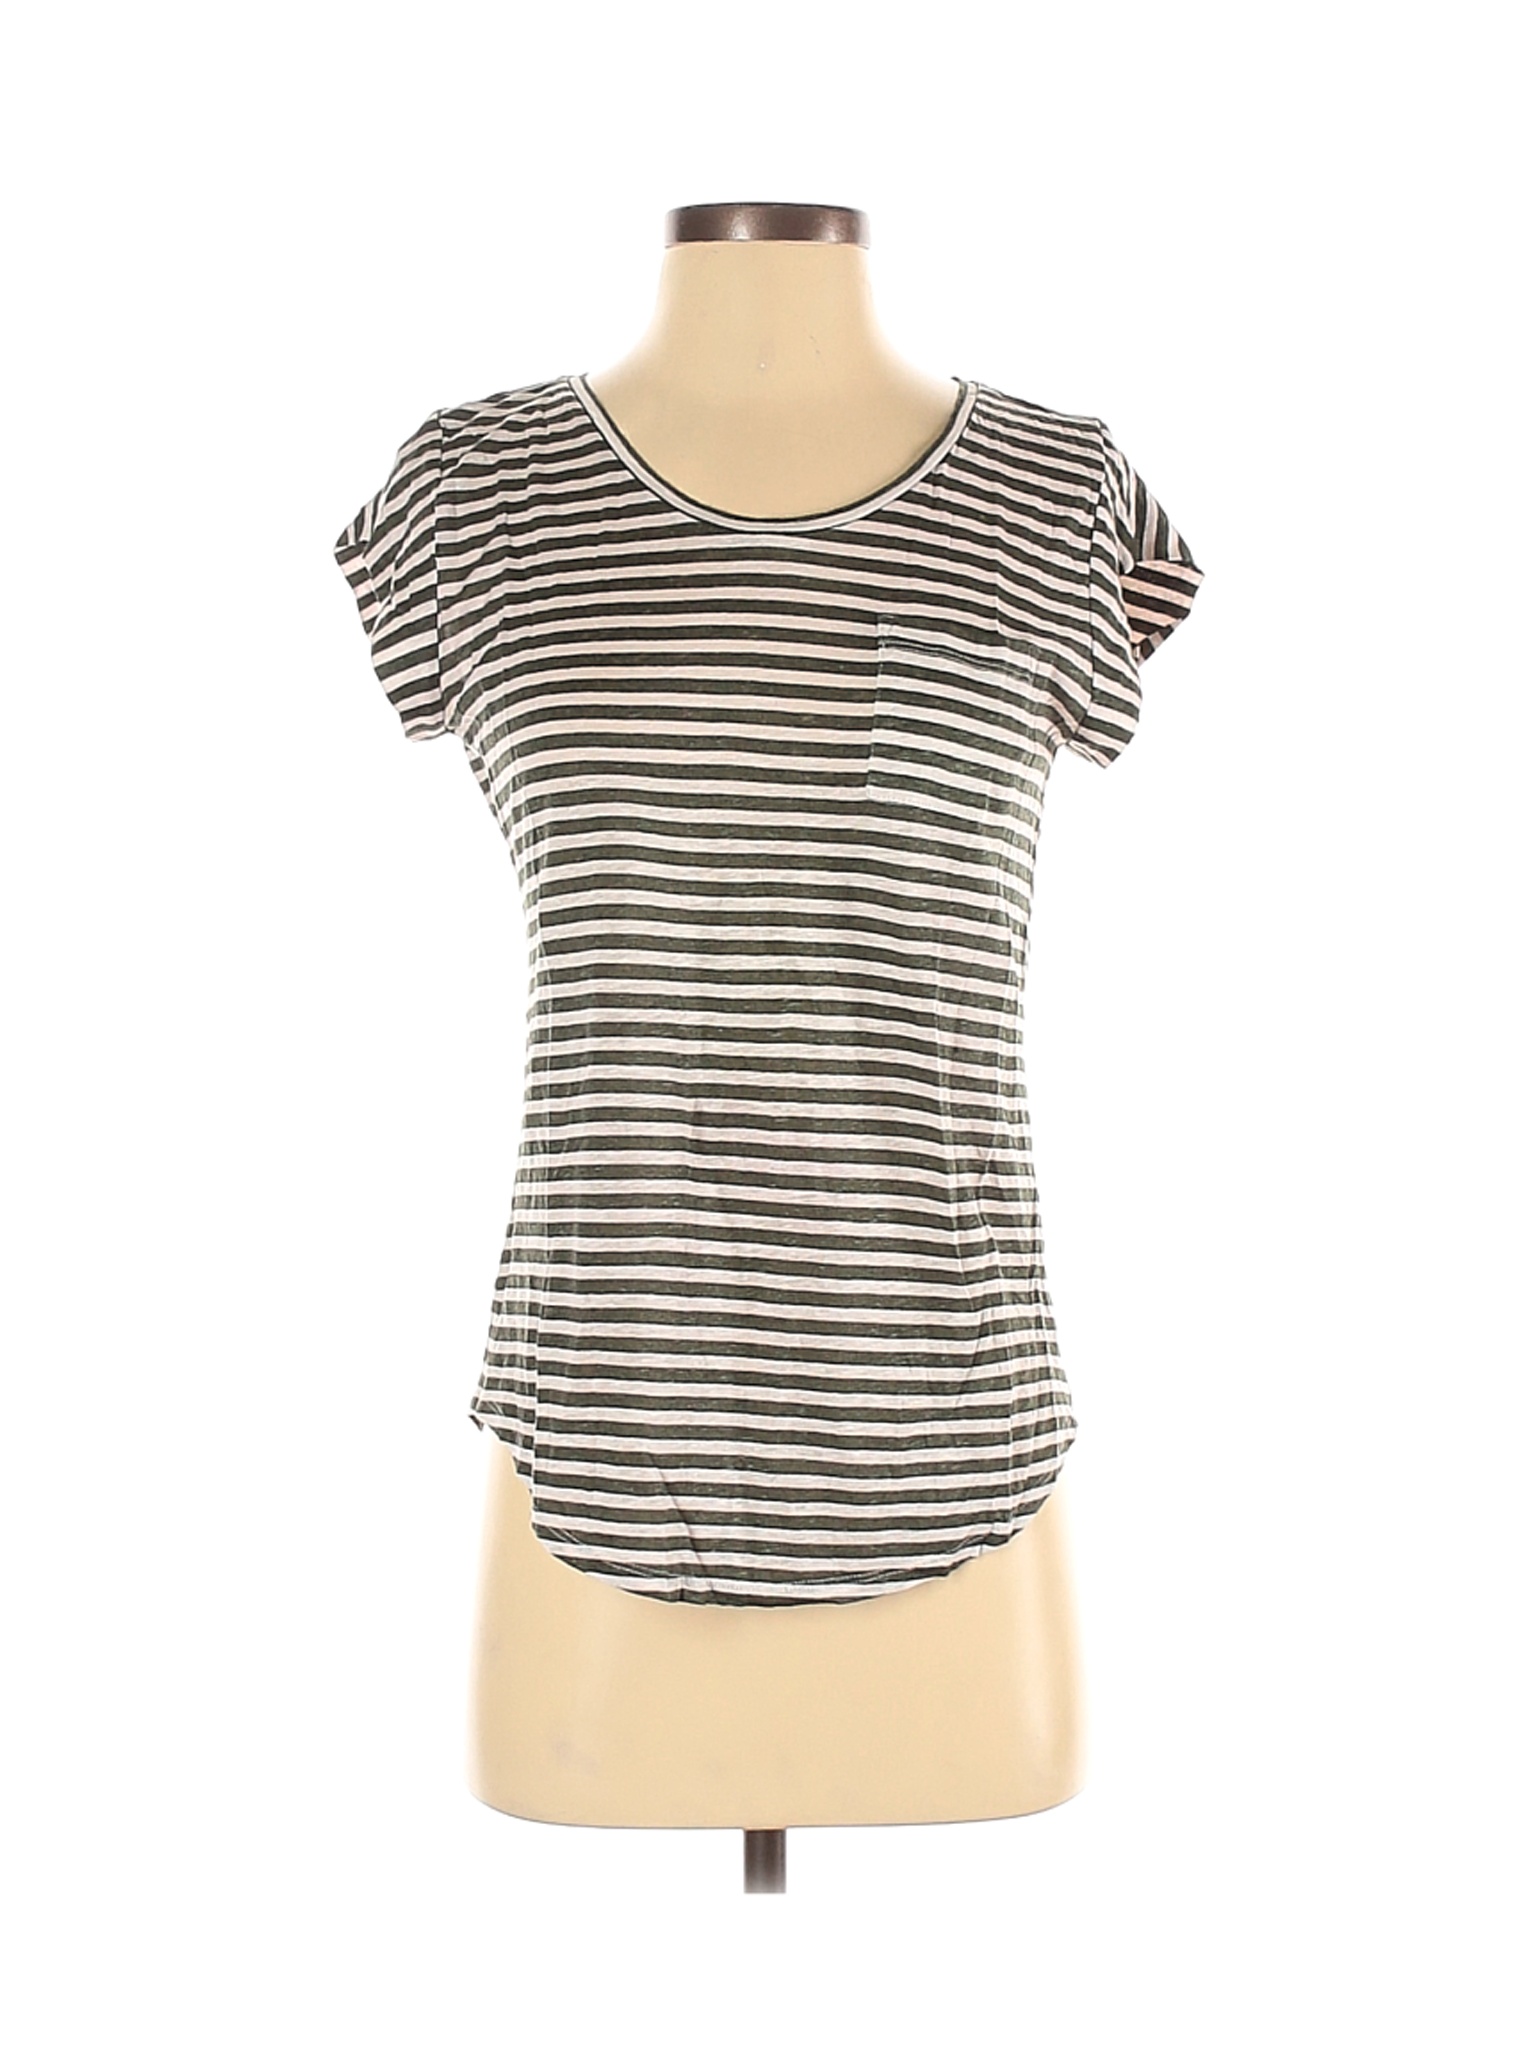 Ann Taylor LOFT Women Green Short Sleeve T-Shirt S | eBay